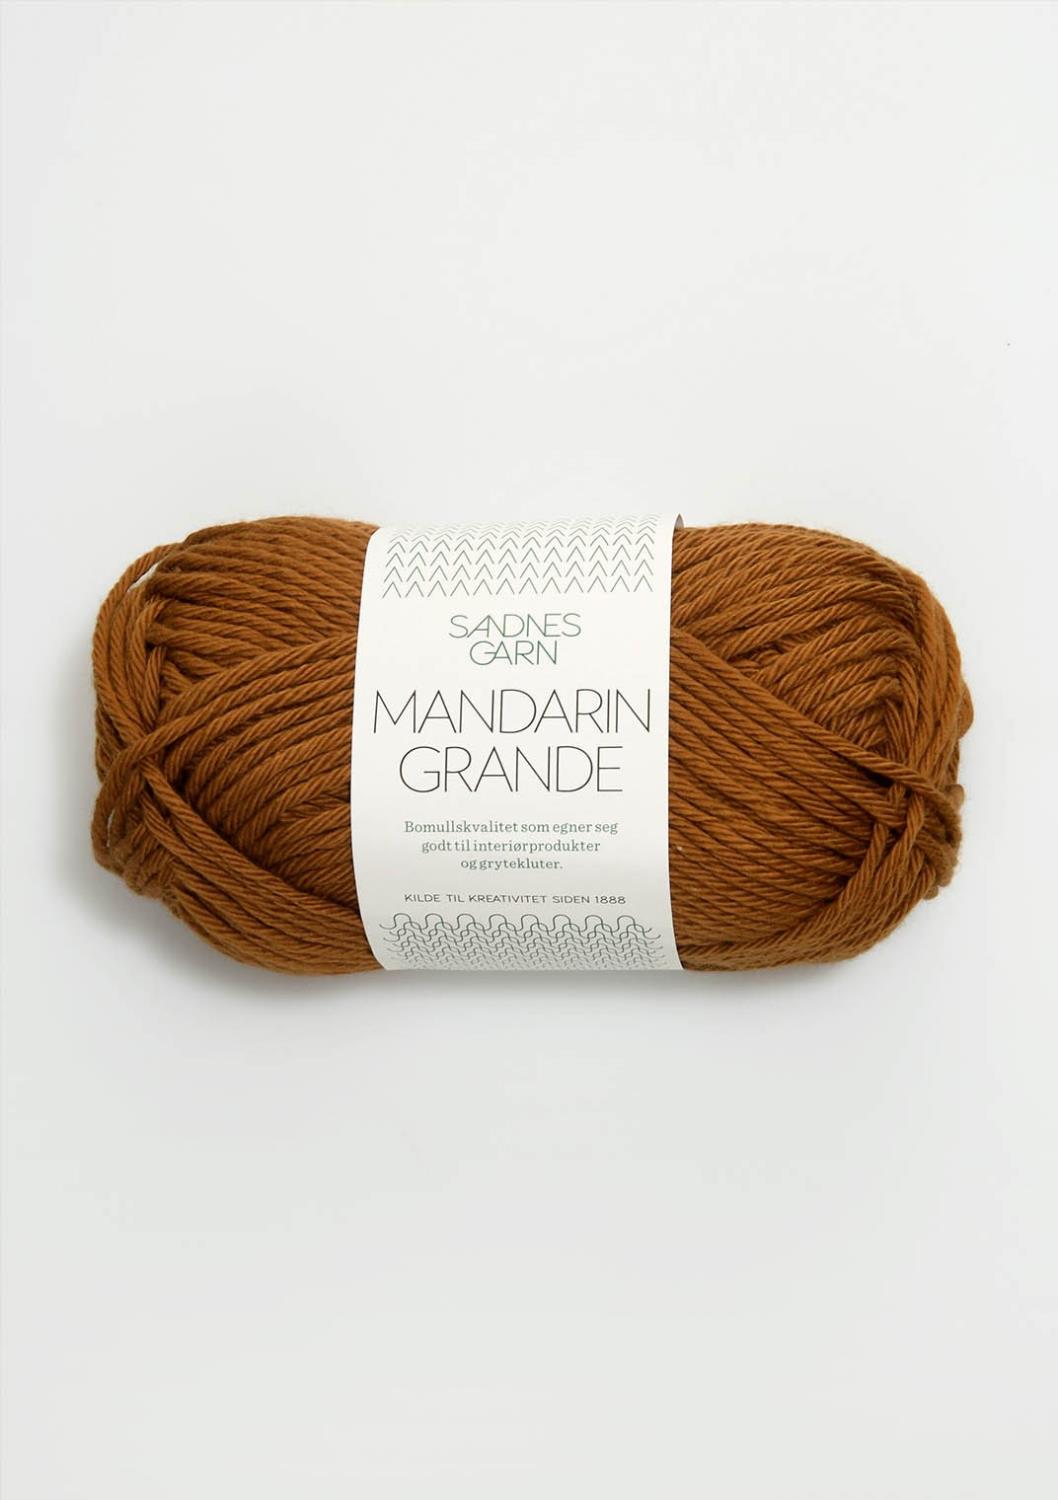 Mandarin Grande Sandnes 2336 - Mørk Karri